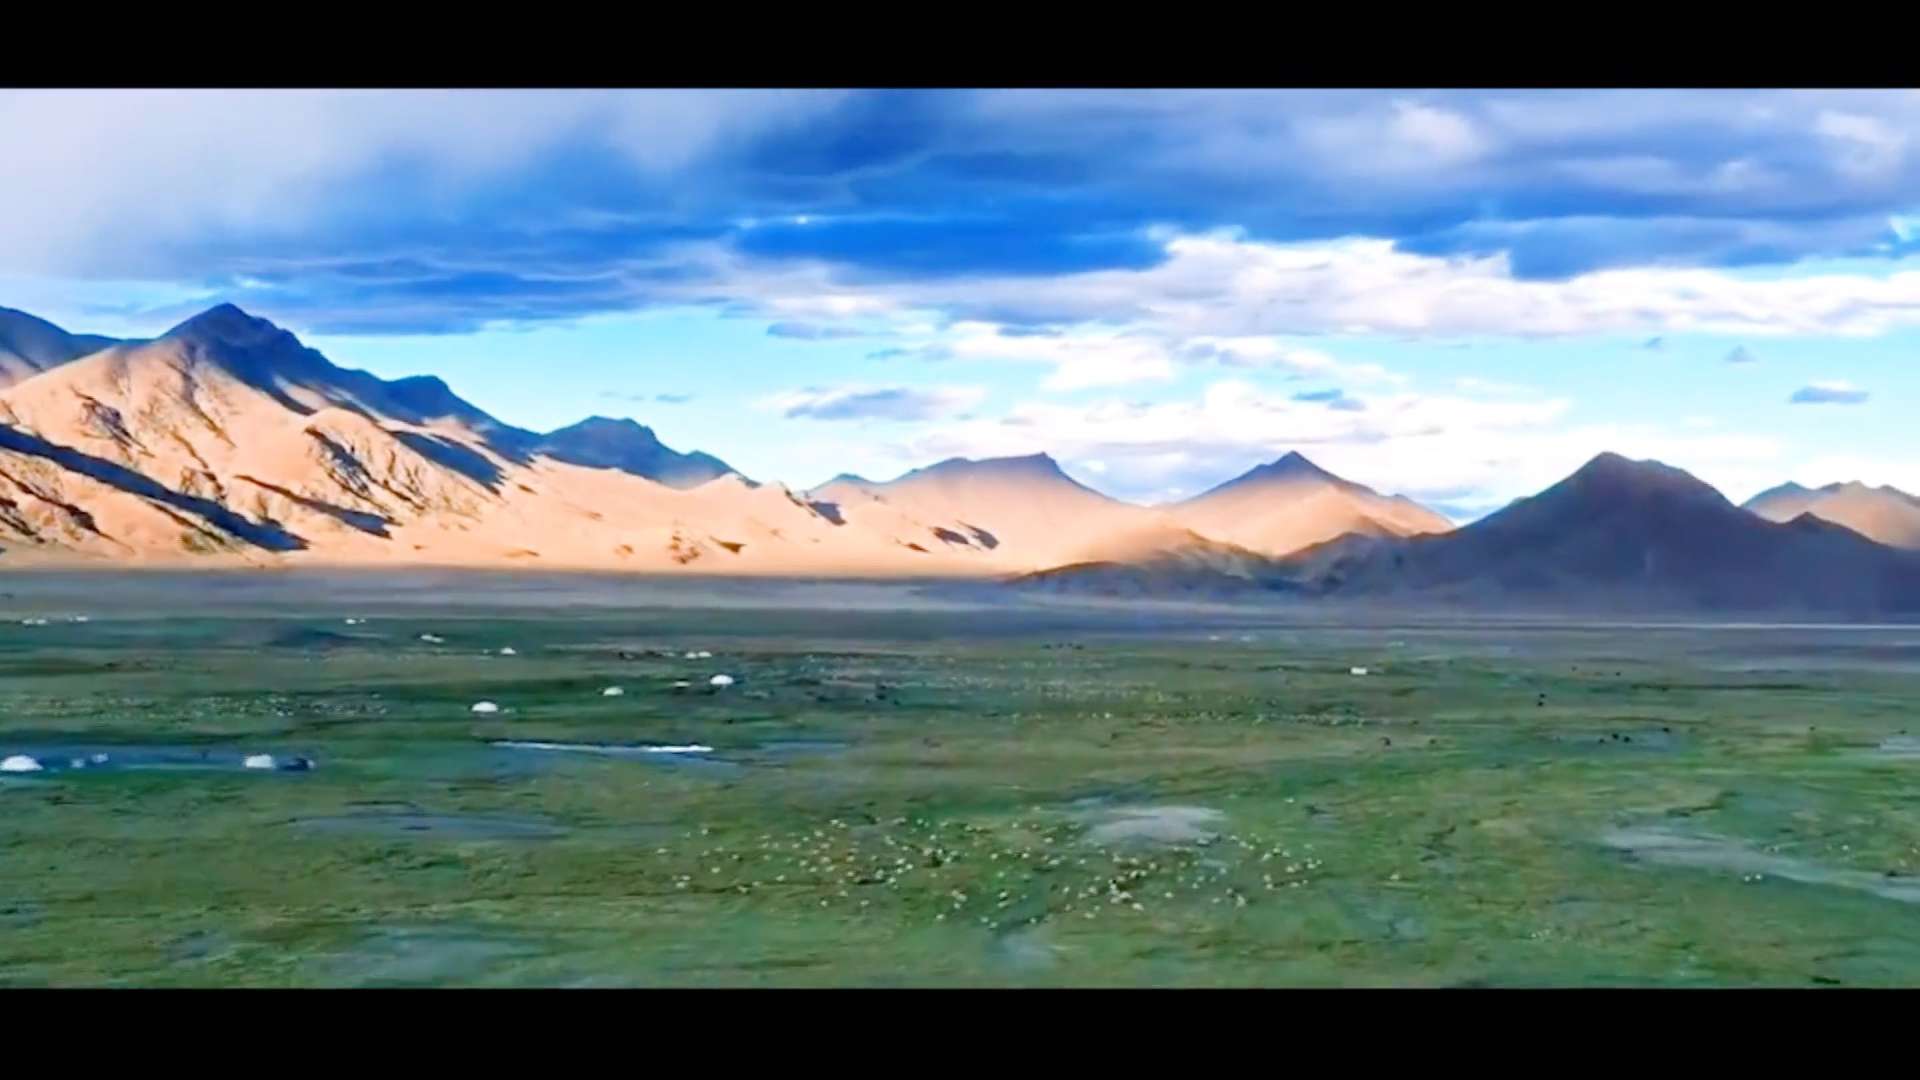 长沙-贡嘎 我的援藏日志    何勇：“网红林卡”让贡嘎吃上“生态旅游饭